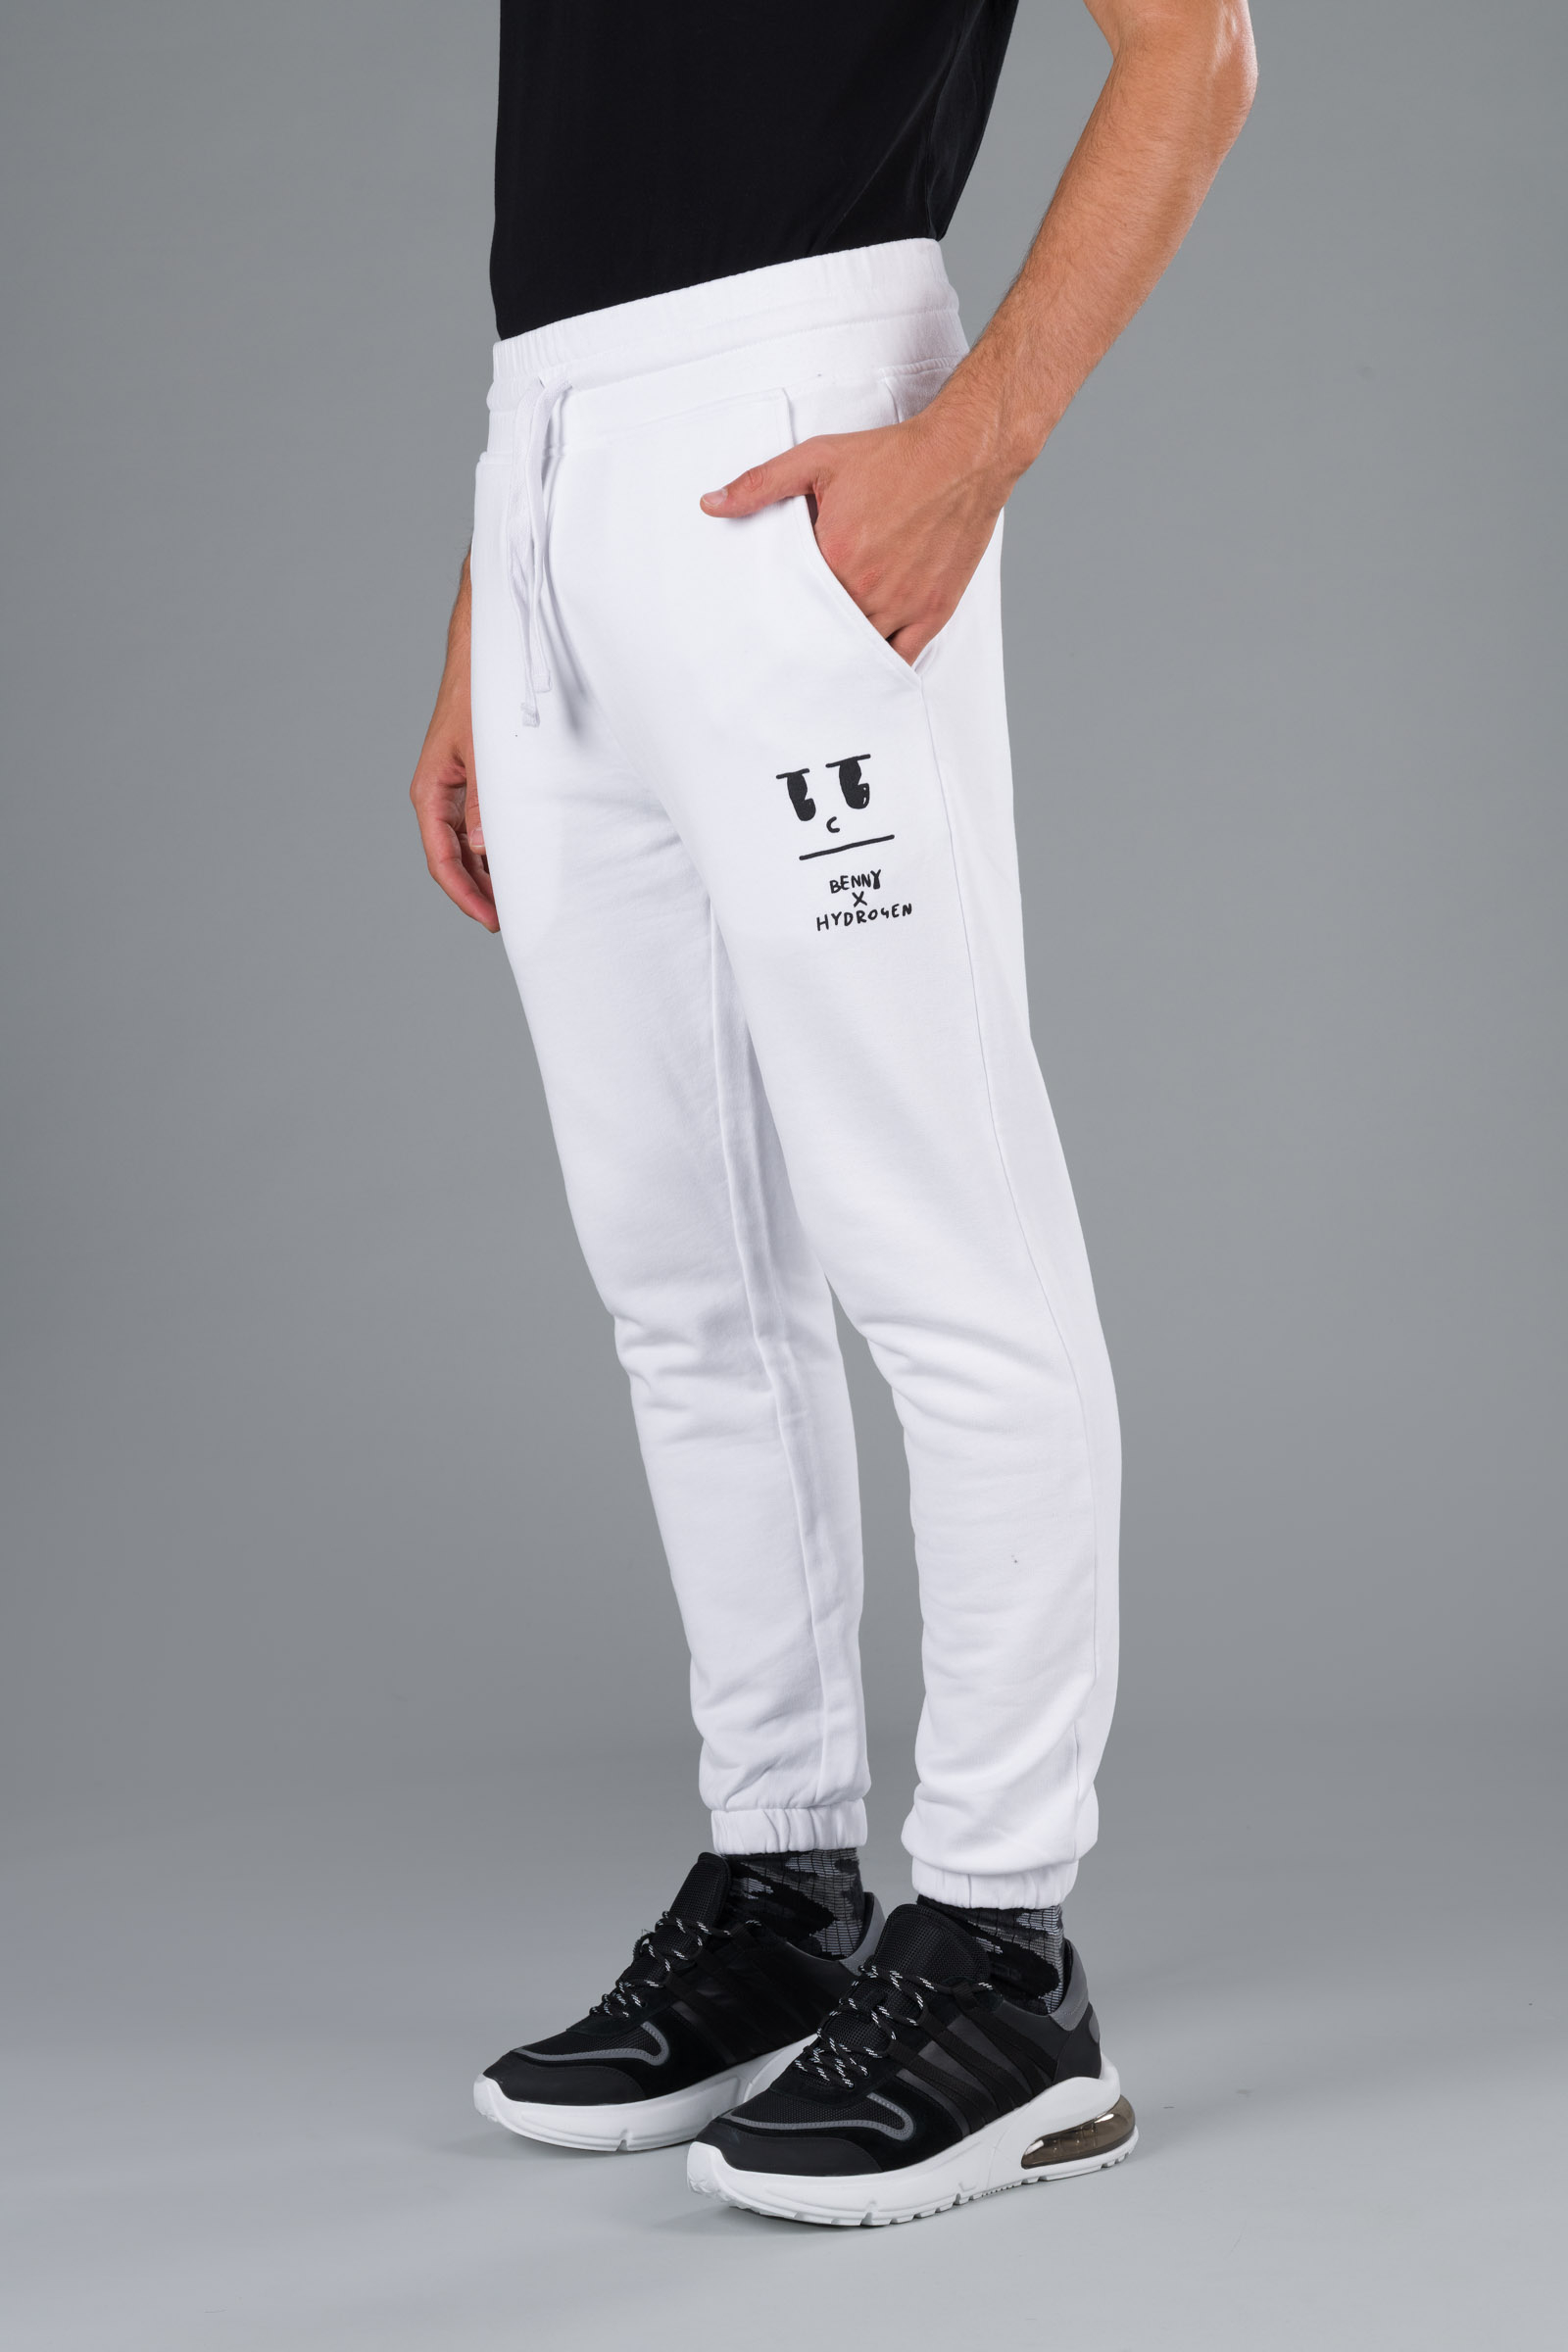 BENNY SWEATPANTS - WHITE - Abbigliamento sportivo | Hydrogen